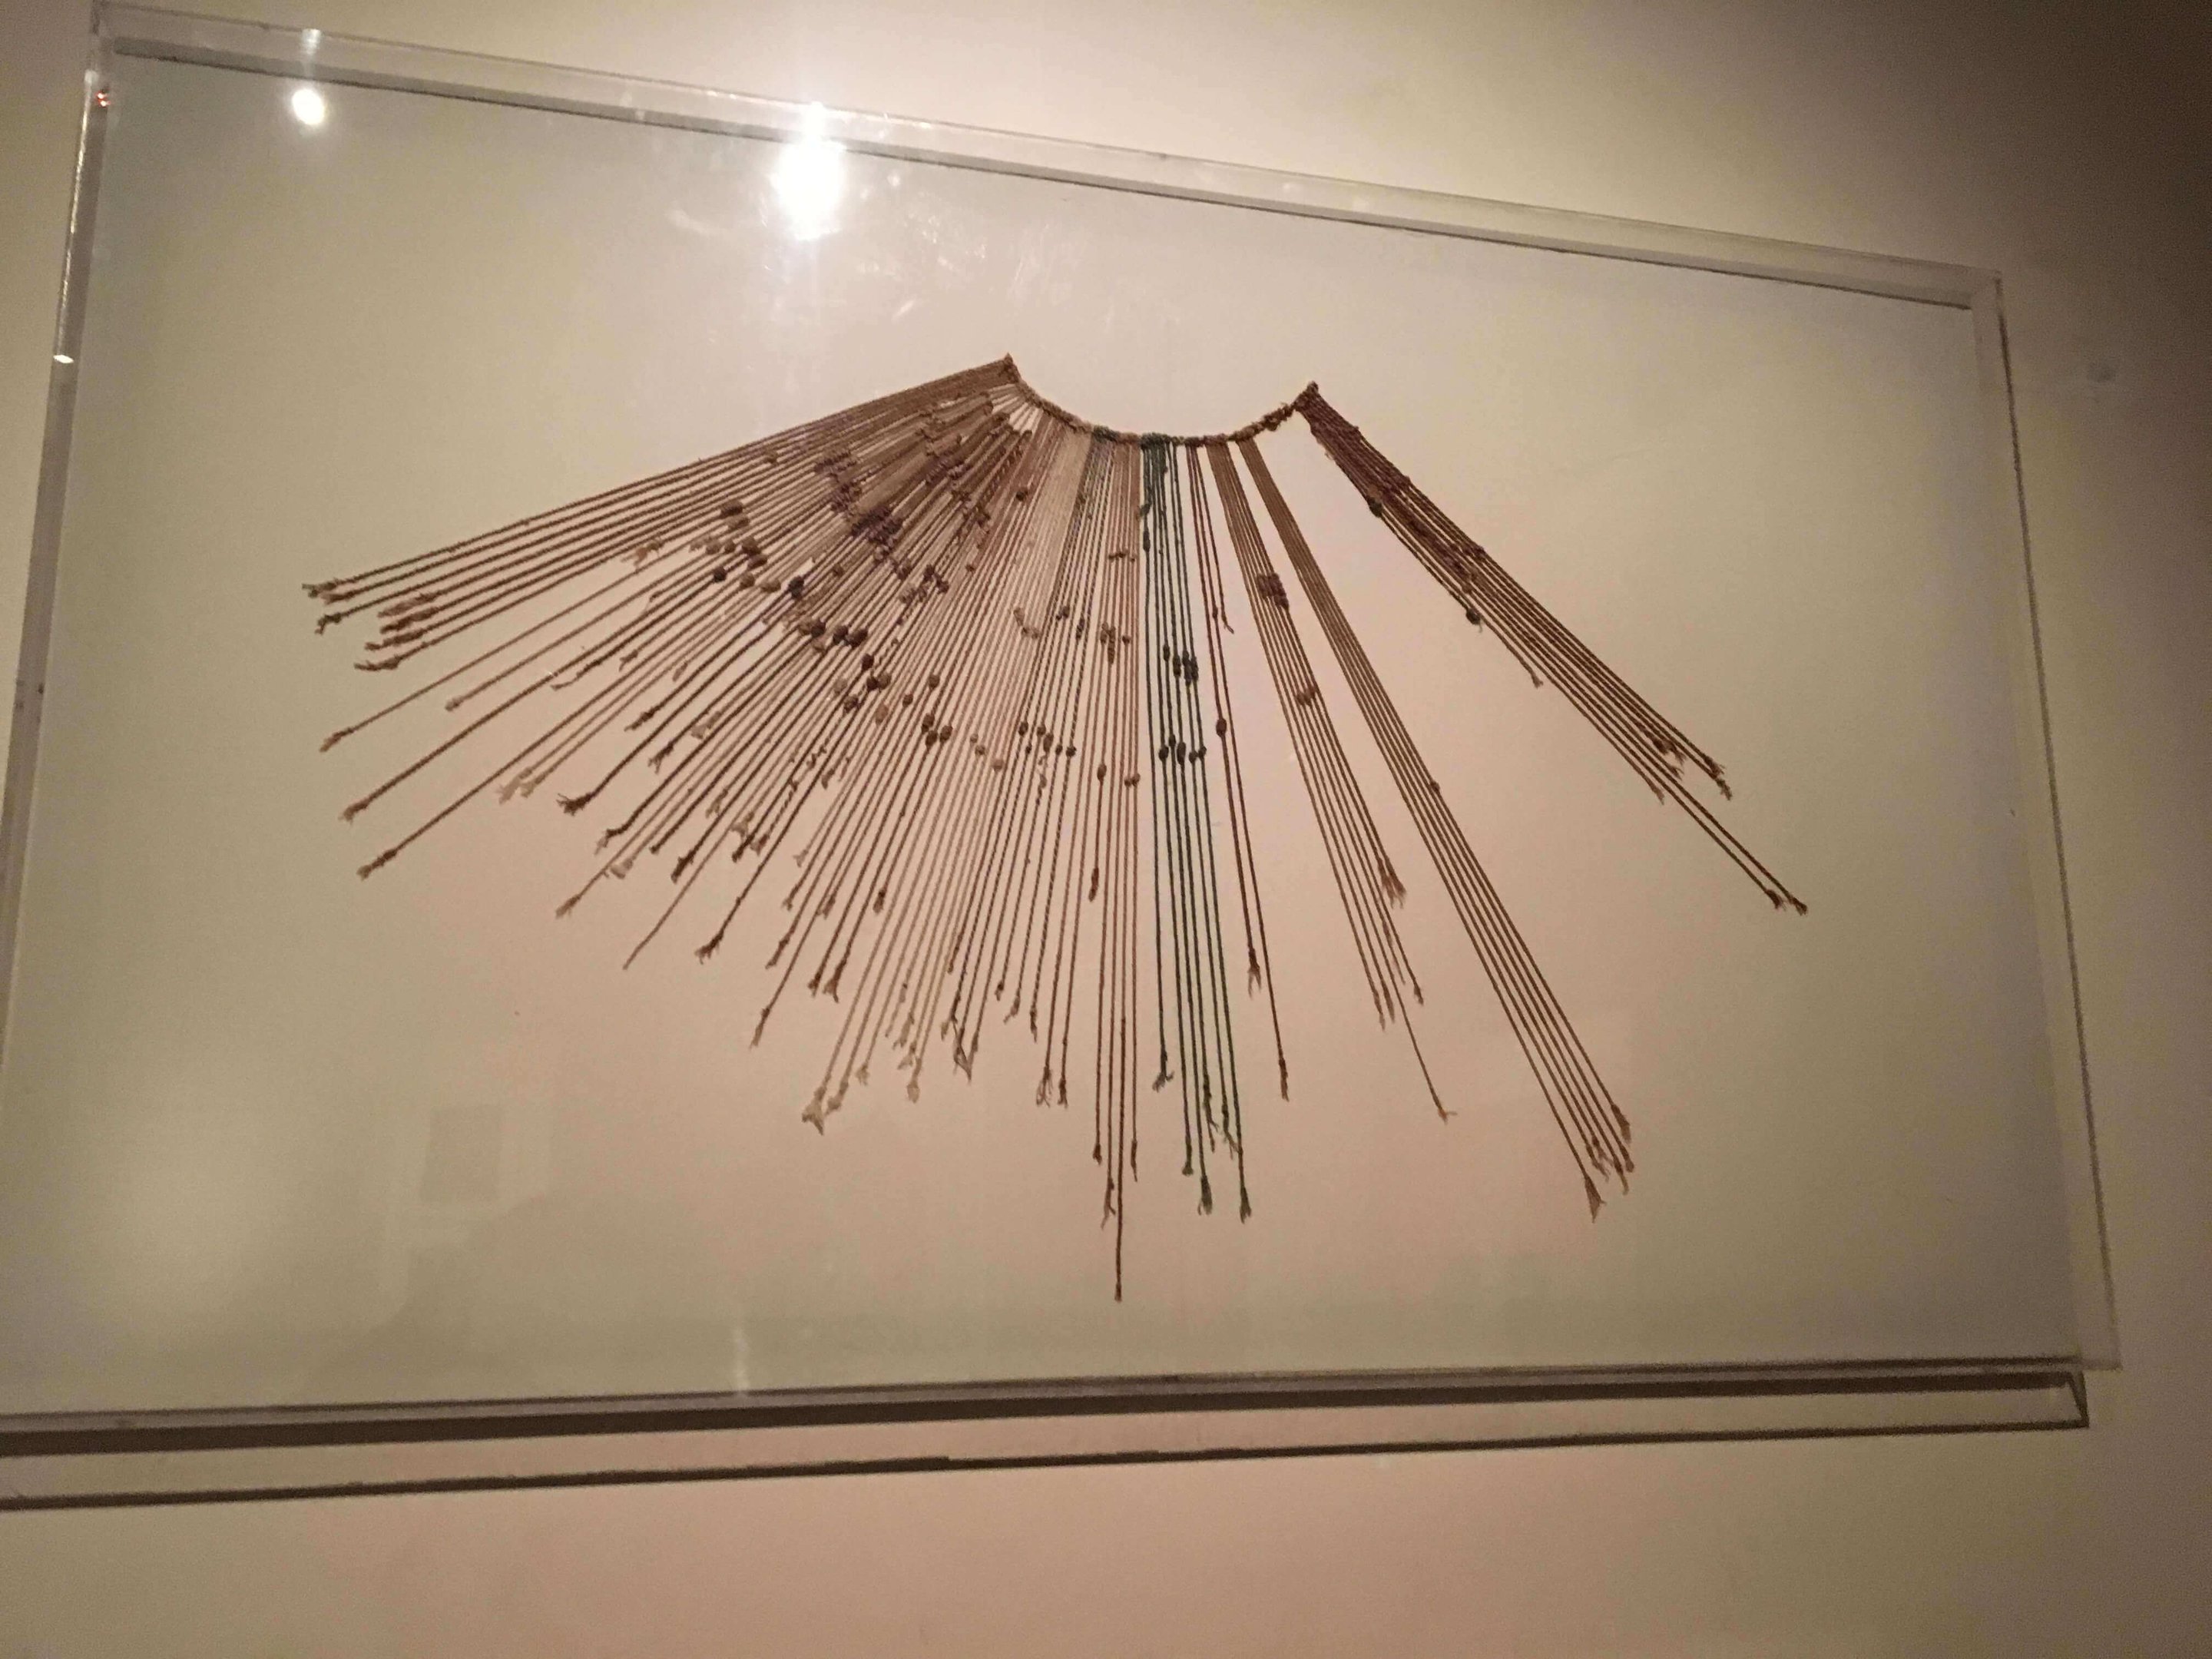 Exemplo de quipu da era inca. Conjunto de pequenas contas em cordas finas era usado para registros